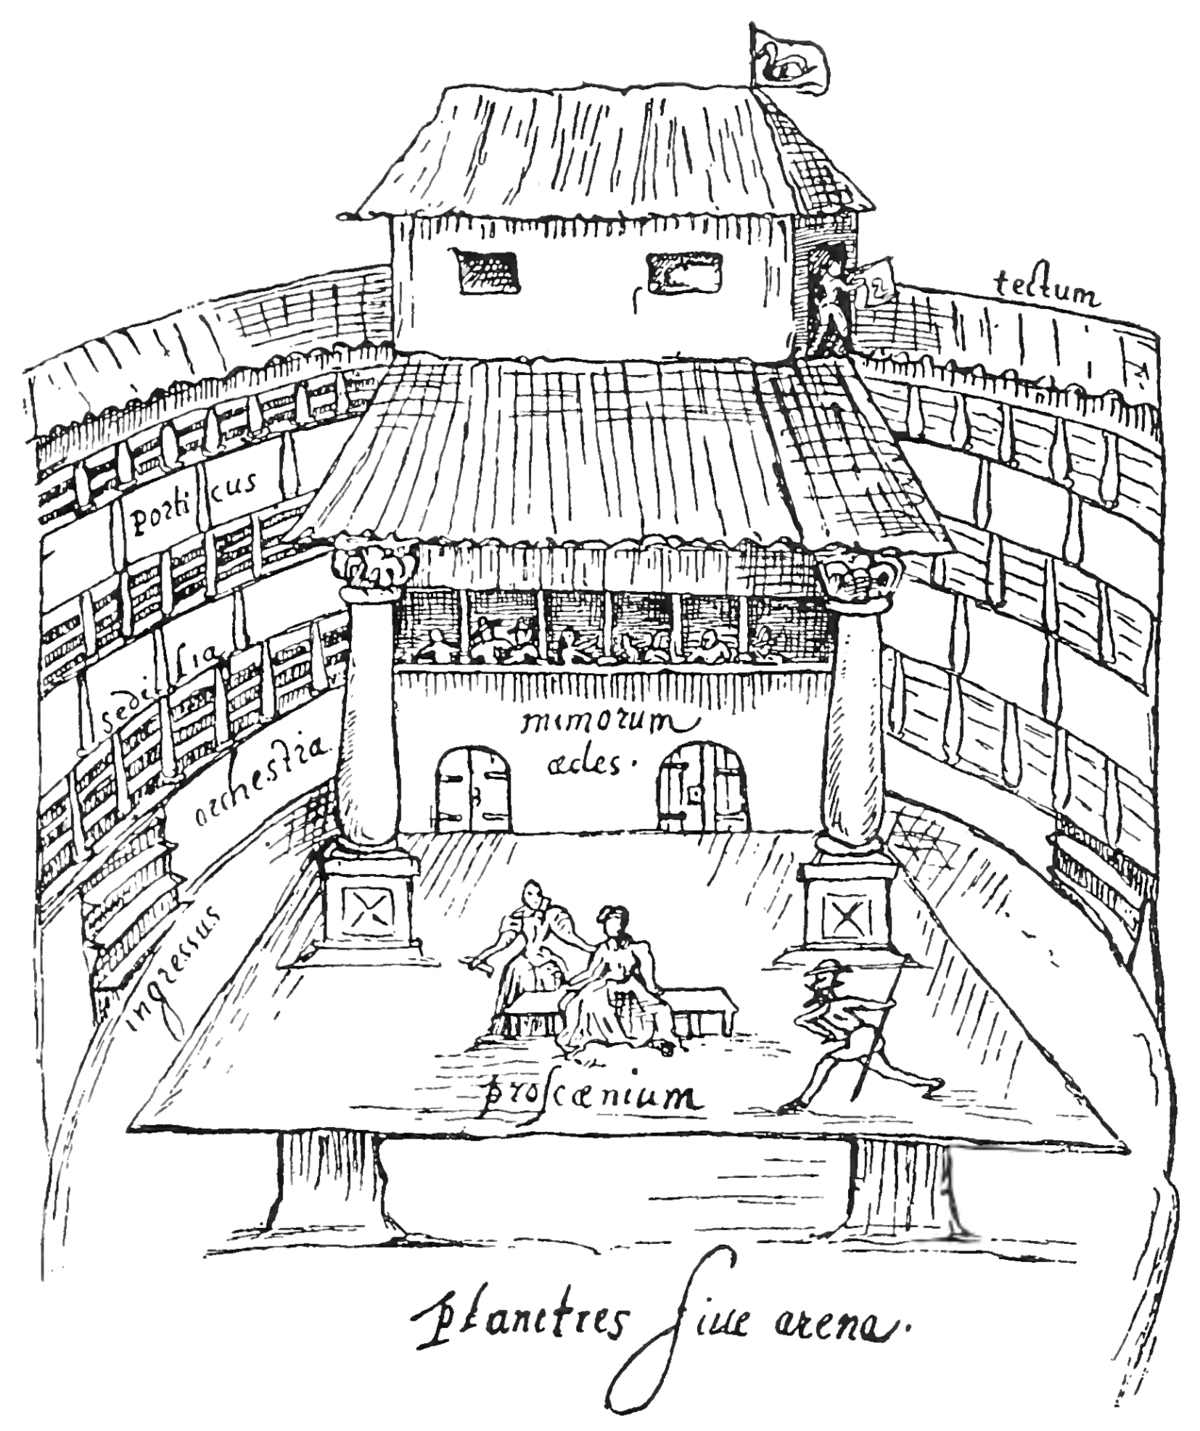 Globe Theatre Diagram English Renaissance Theatre Wikipedia